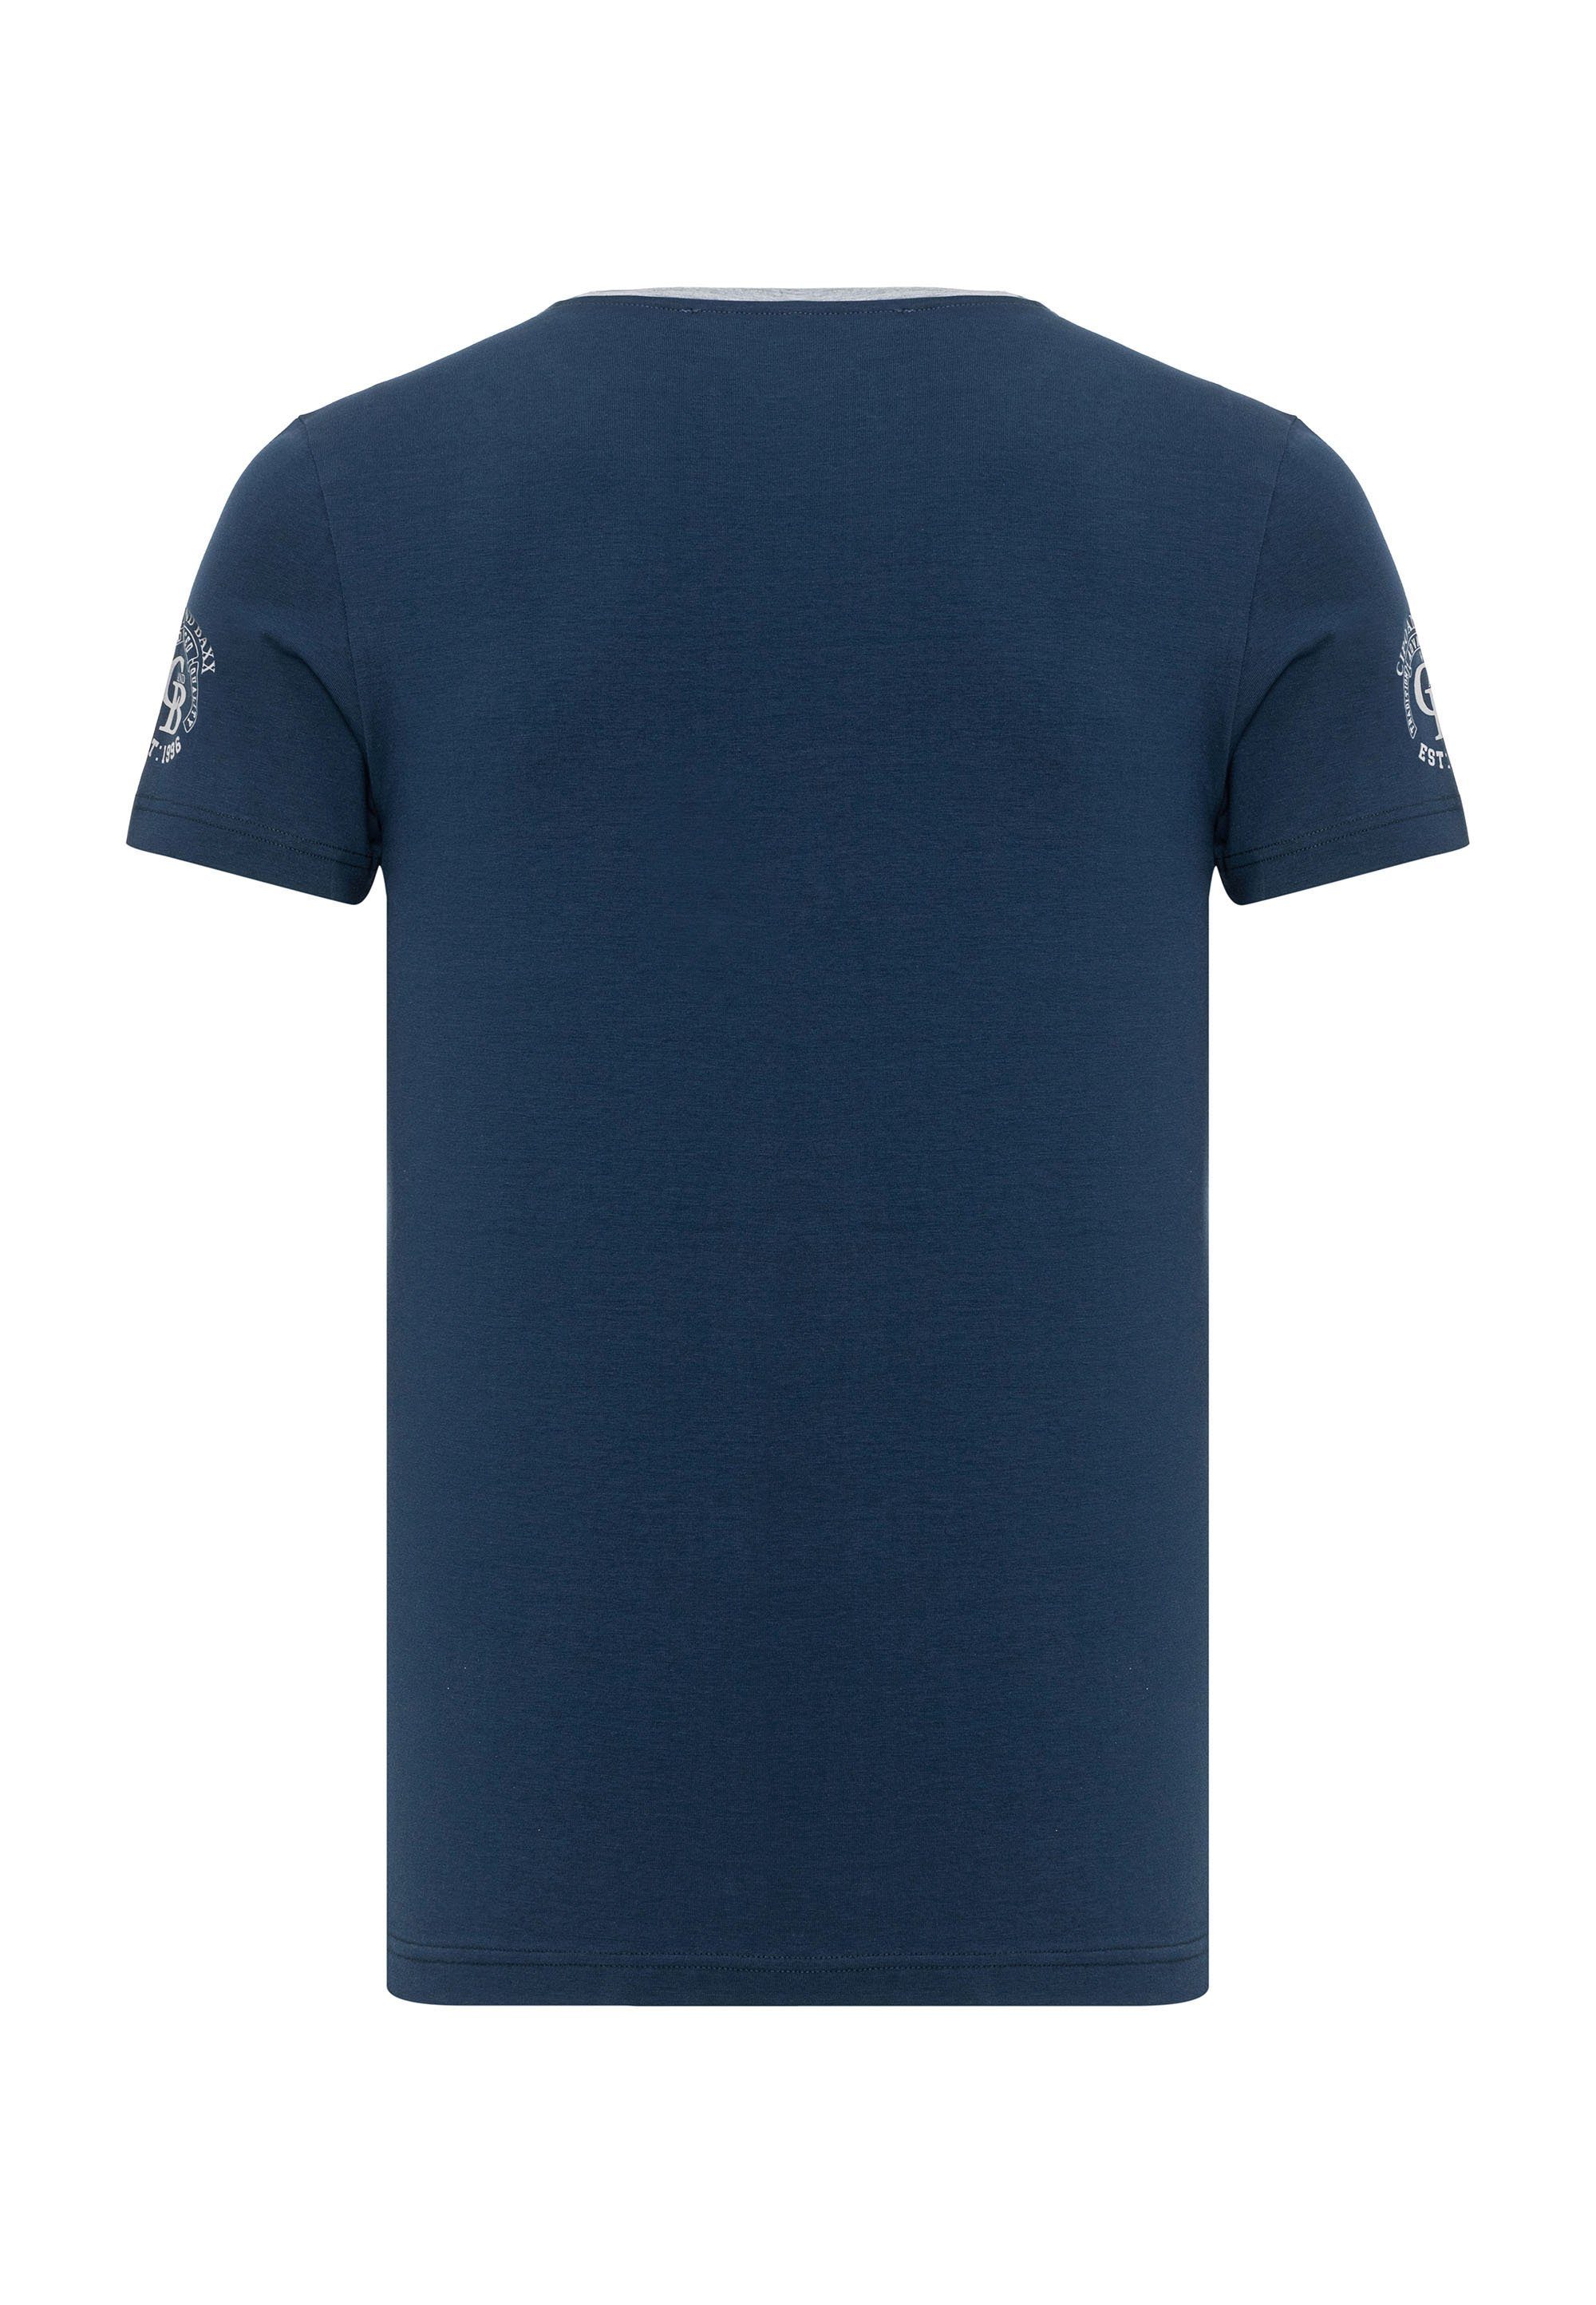 Markenlogos Cipo T-Shirt blau & dezenten mit Baxx